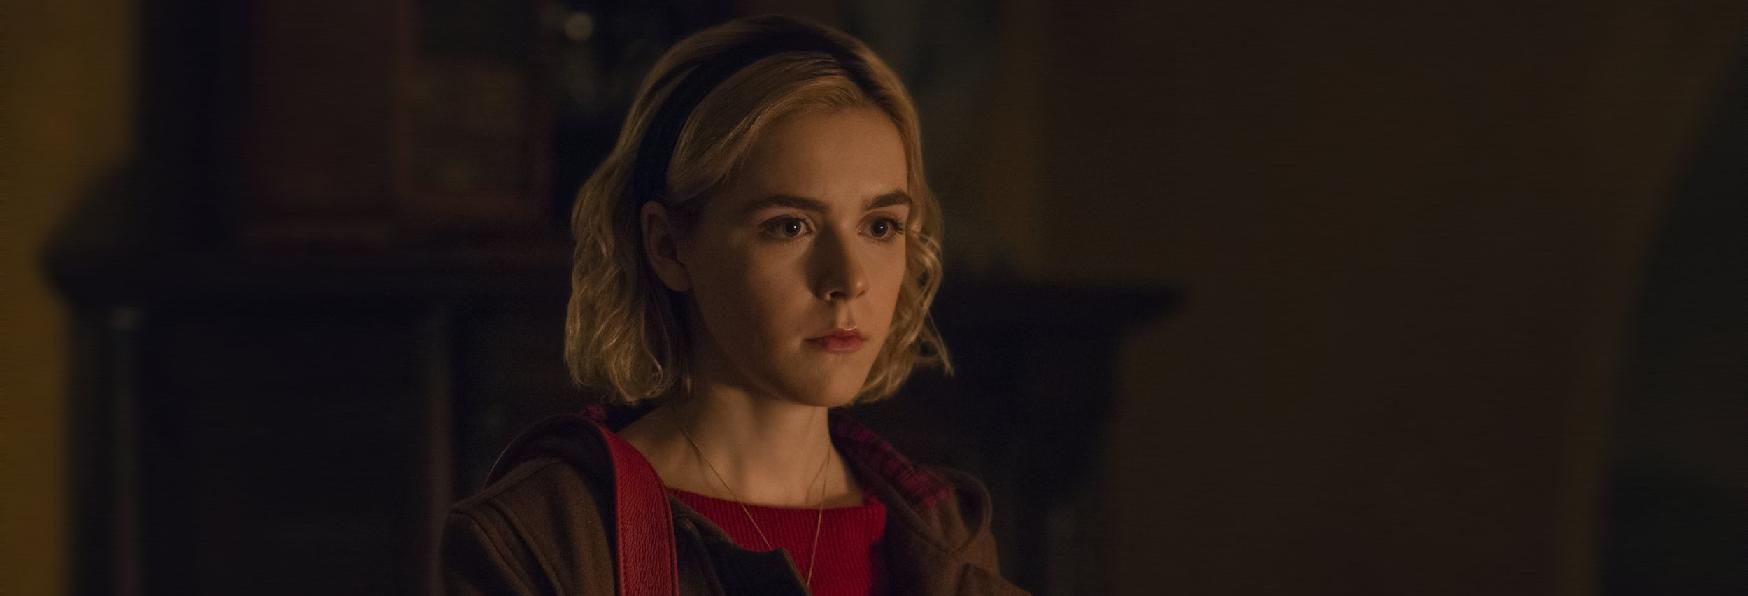 Le Terrificanti Avventure di Sabrina rischia la Rimozione da Netflix?